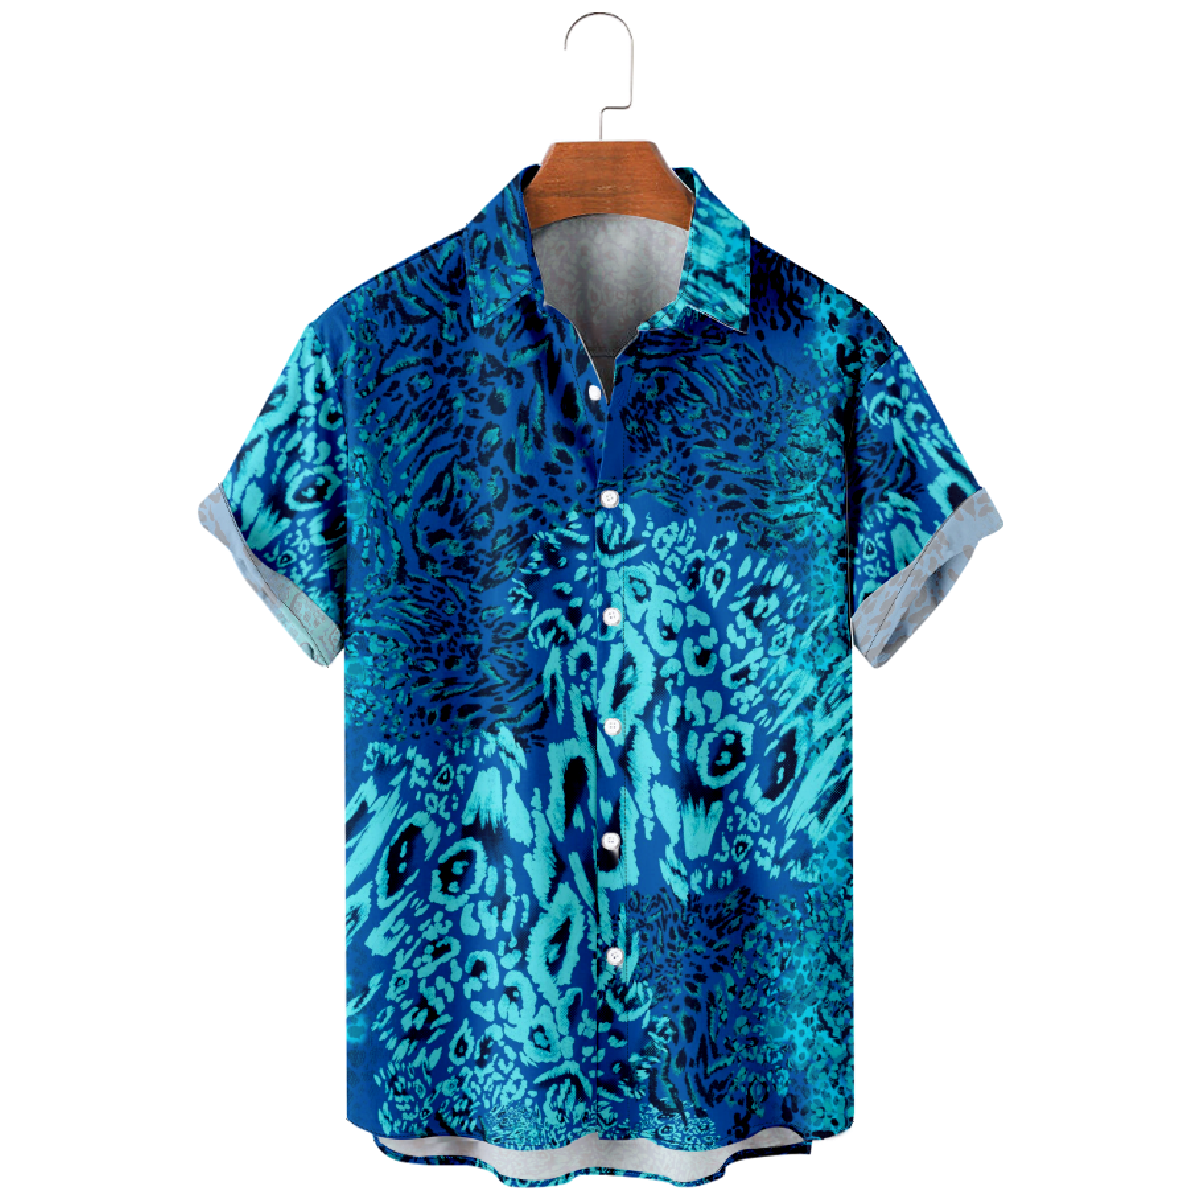 Ocean Blue Button Up Shirt for Men Short Sleeve Shirt Casual Shirt